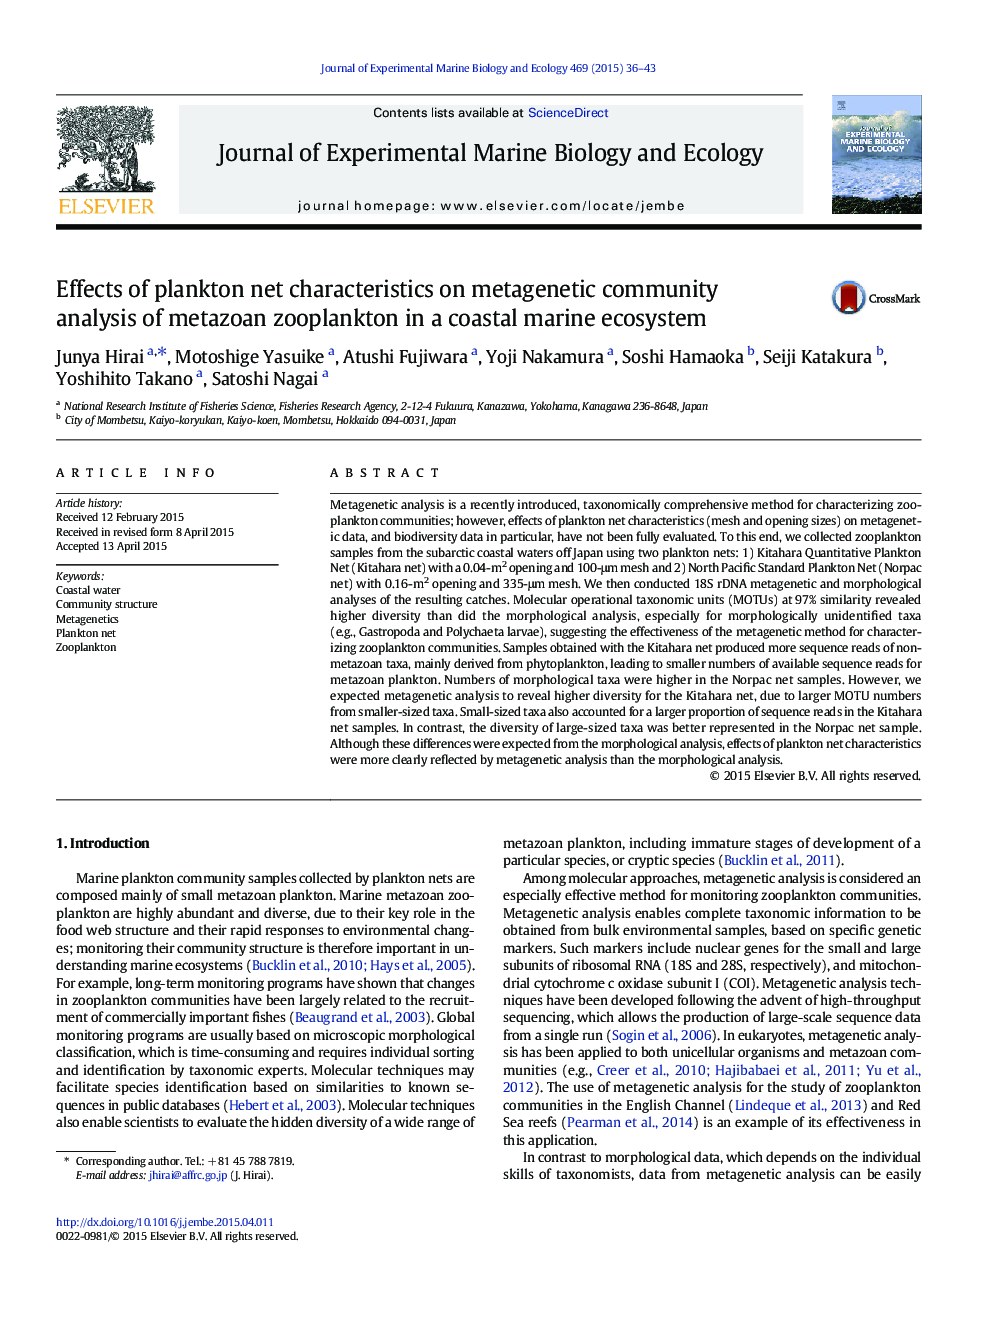 اثرات ویژگی های خالص پلانکتون در تجزیه و تحلیل جامعه متاننیتی زئوپلانکتون متازون در یک اکوسیستم دریایی ساحلی 